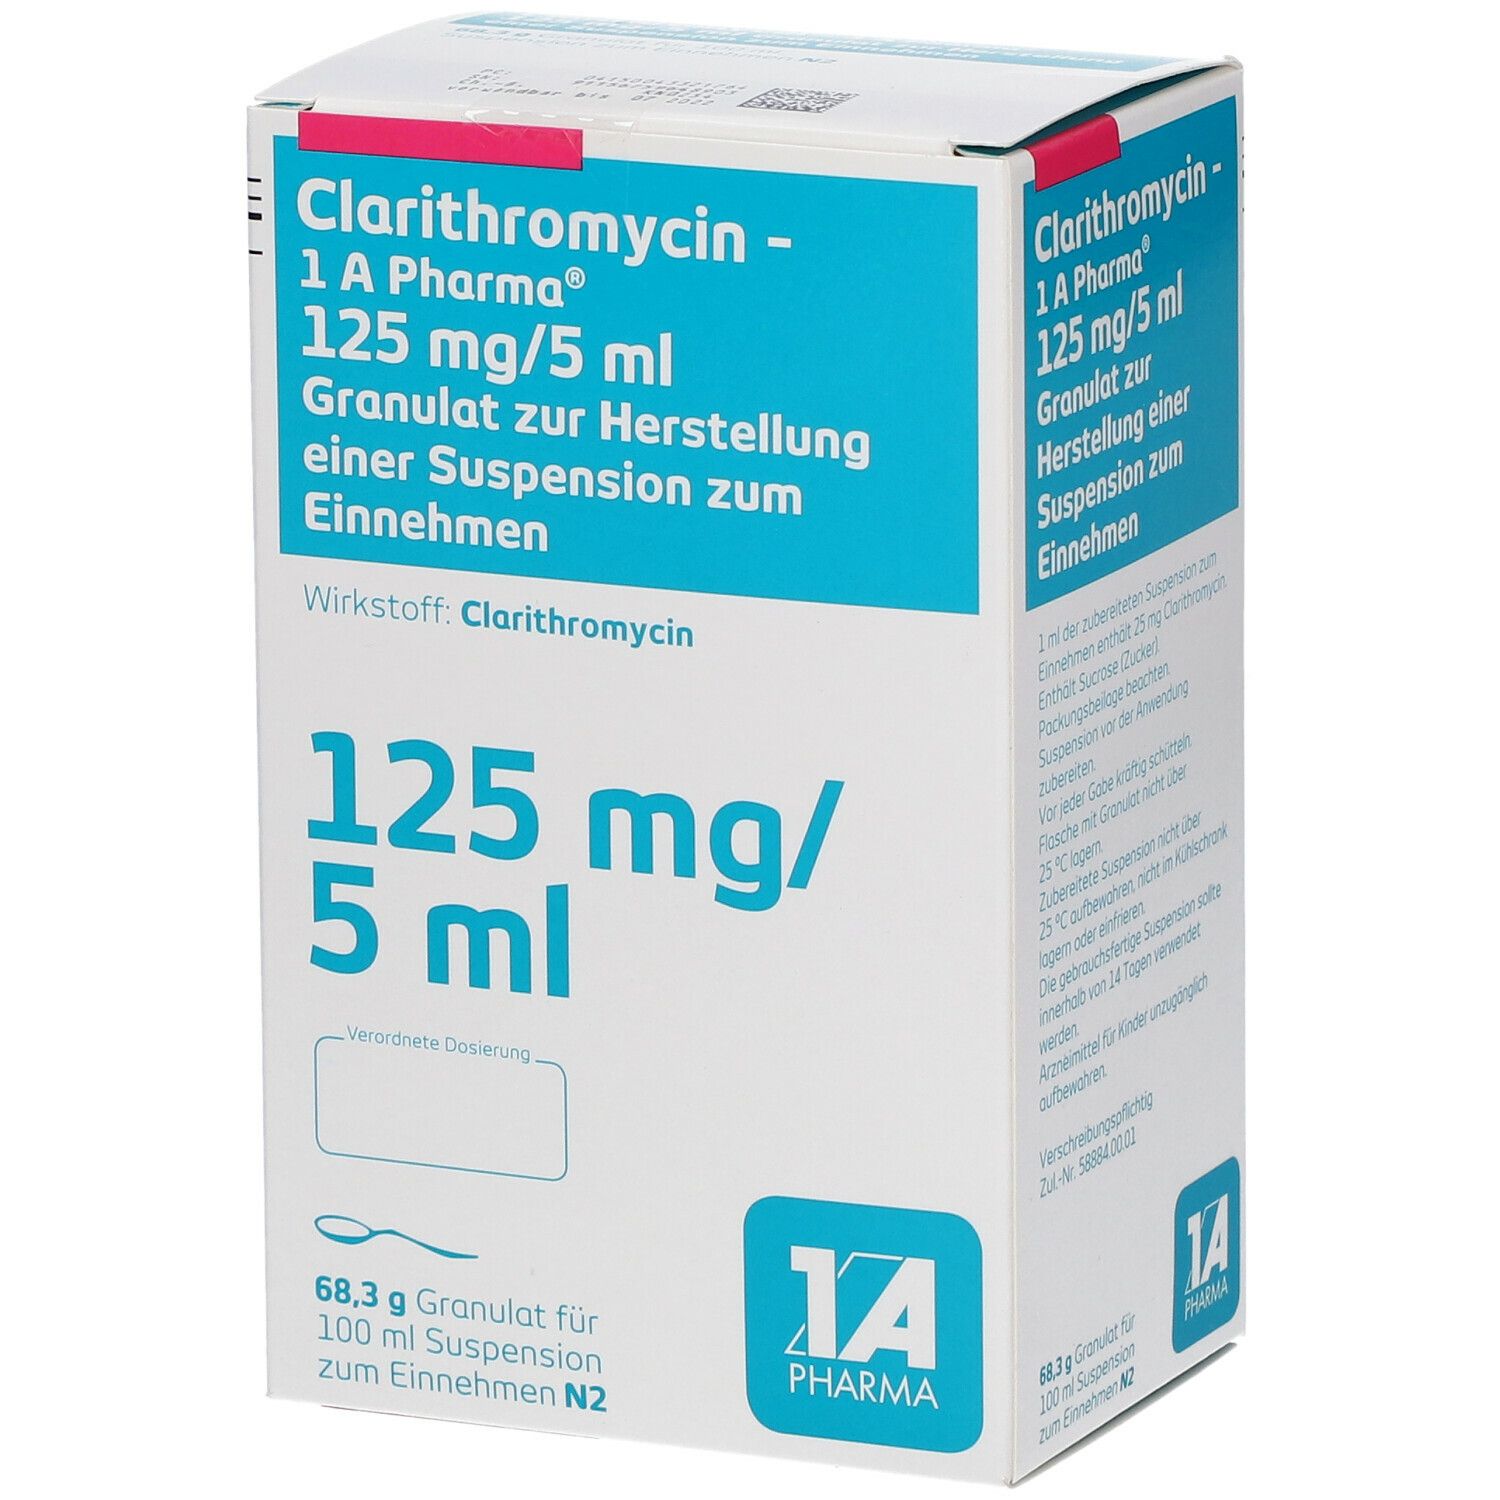 Clarithromycin - 1 A Pharma® 125 mg/5 ml